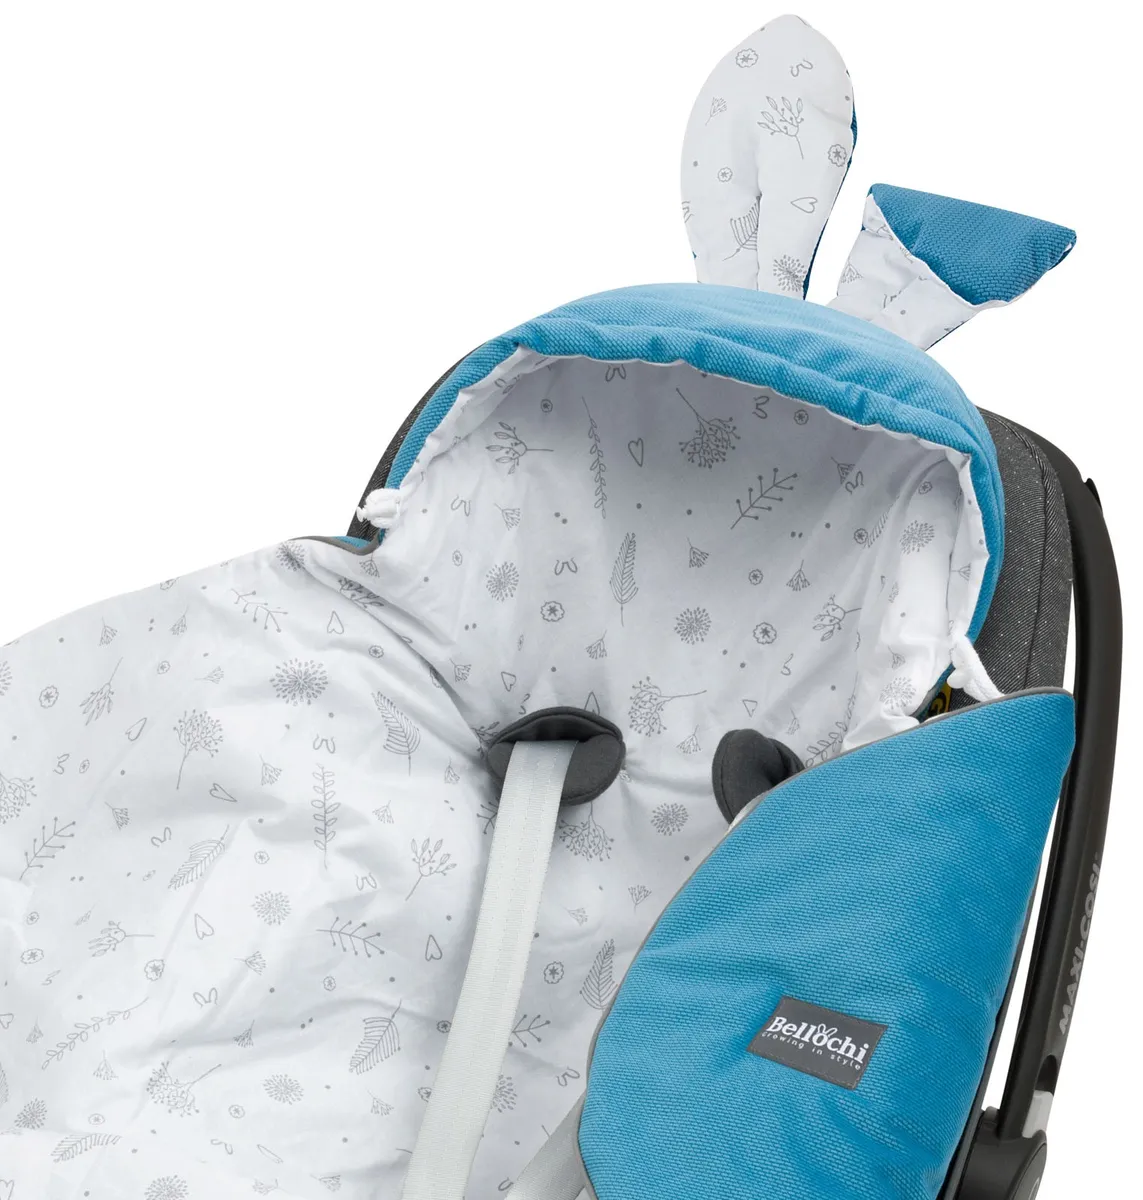 Kocyk, otulacz z kapturem do fotelika niemowlęcego ocean blue